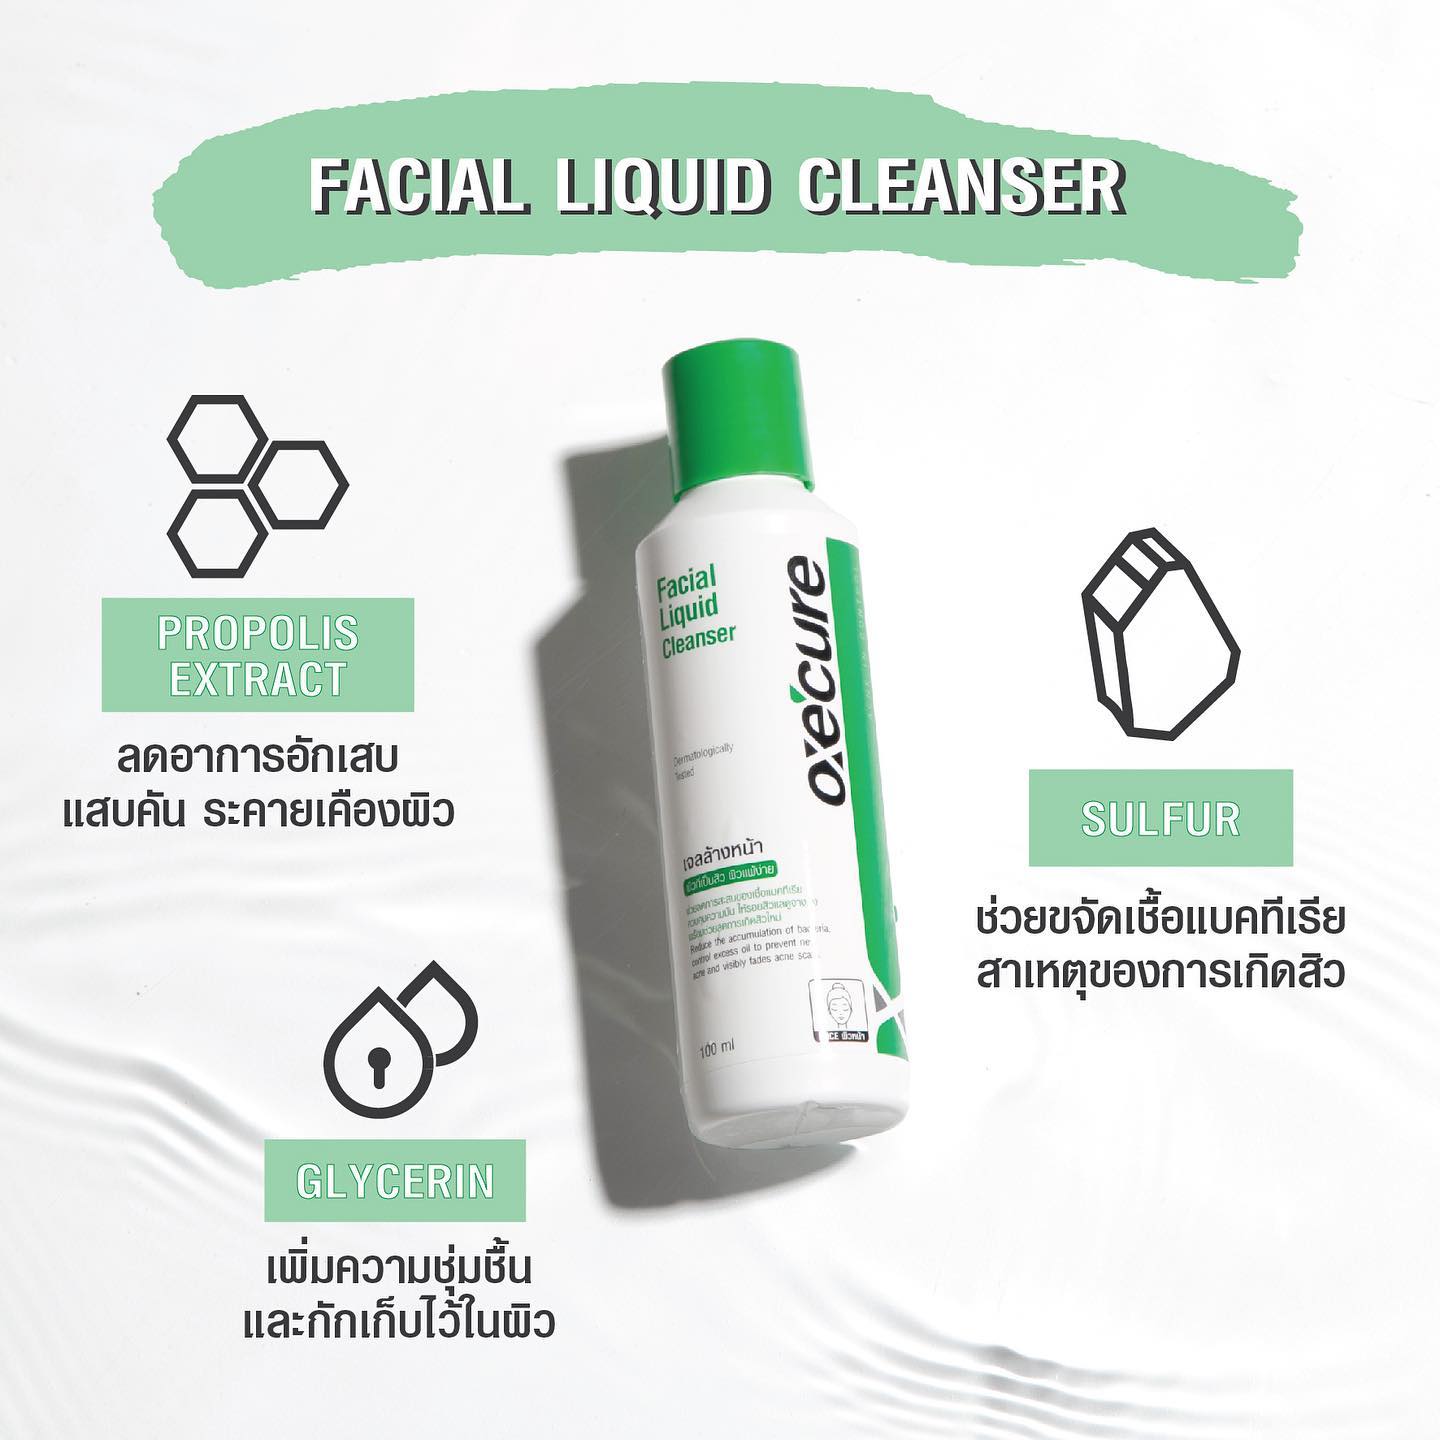 เจลล้างหน้า OXE'CURE Facial Liquid Cleanser